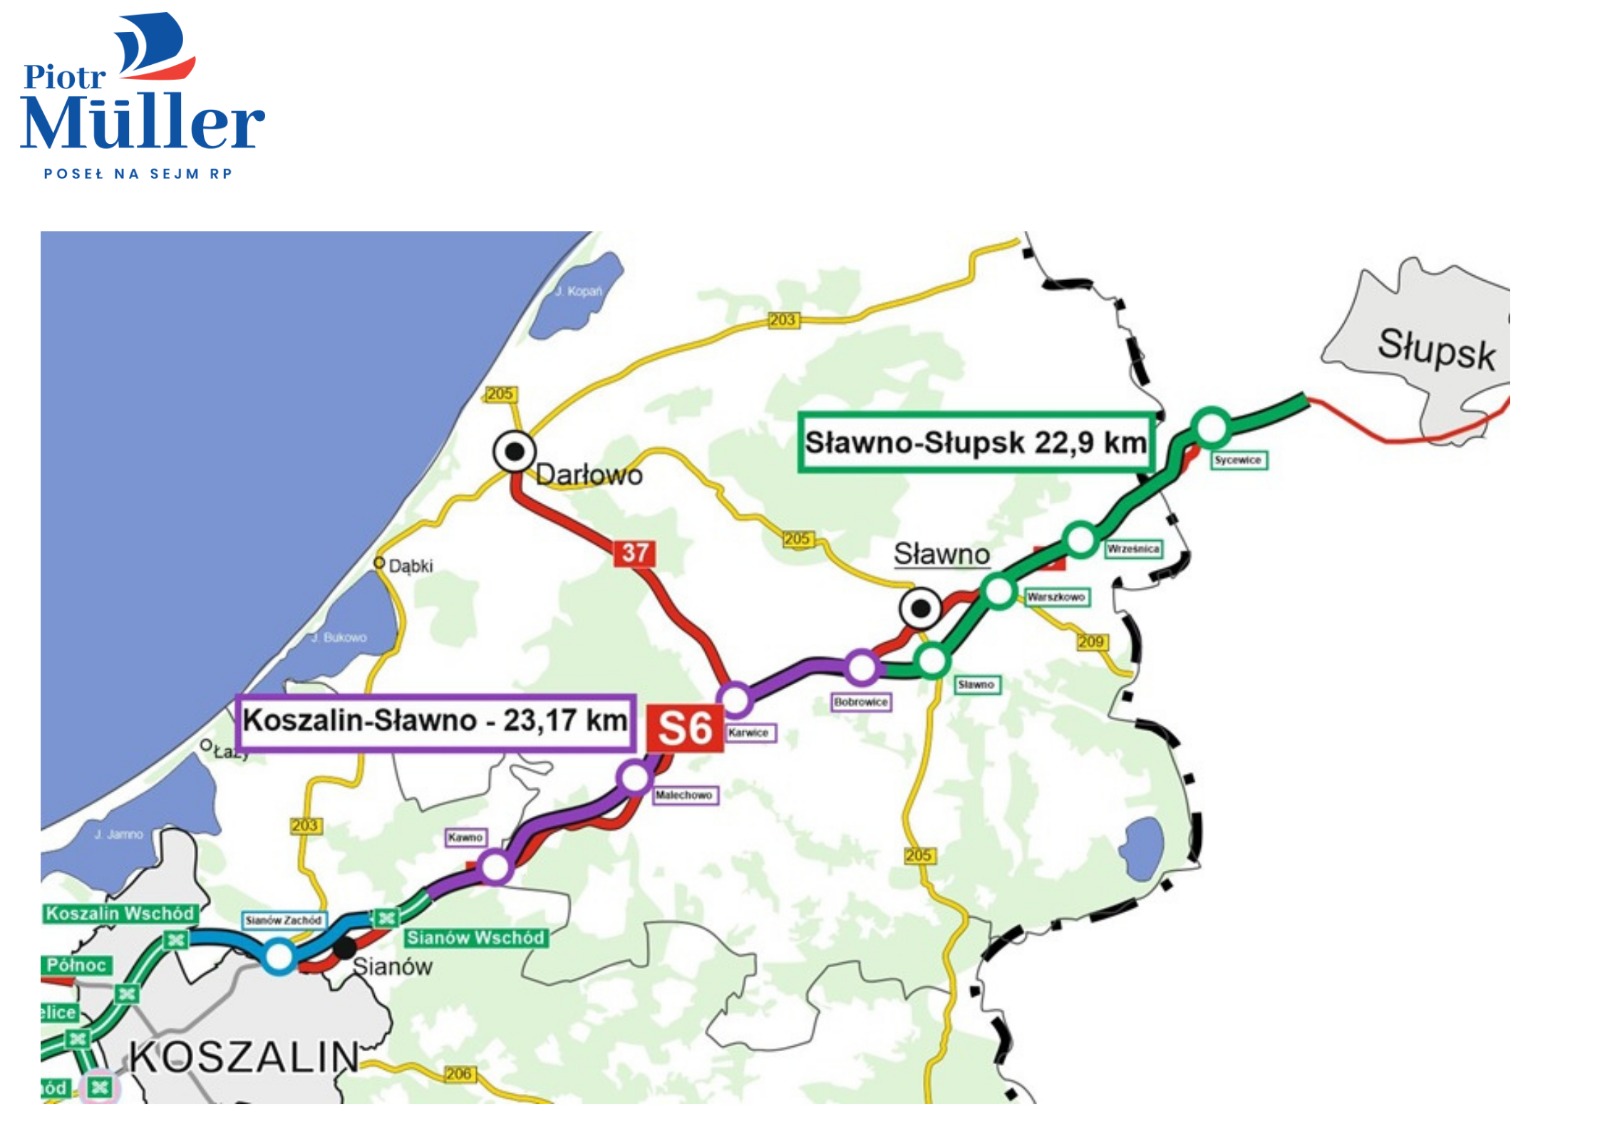 Ogłoszono przetargi na budowę odcinków Sianów Wschód - Sławno oraz Sławno-Słupsk w ramach budowy S6! To będzie aż 46 km nowej drogi!